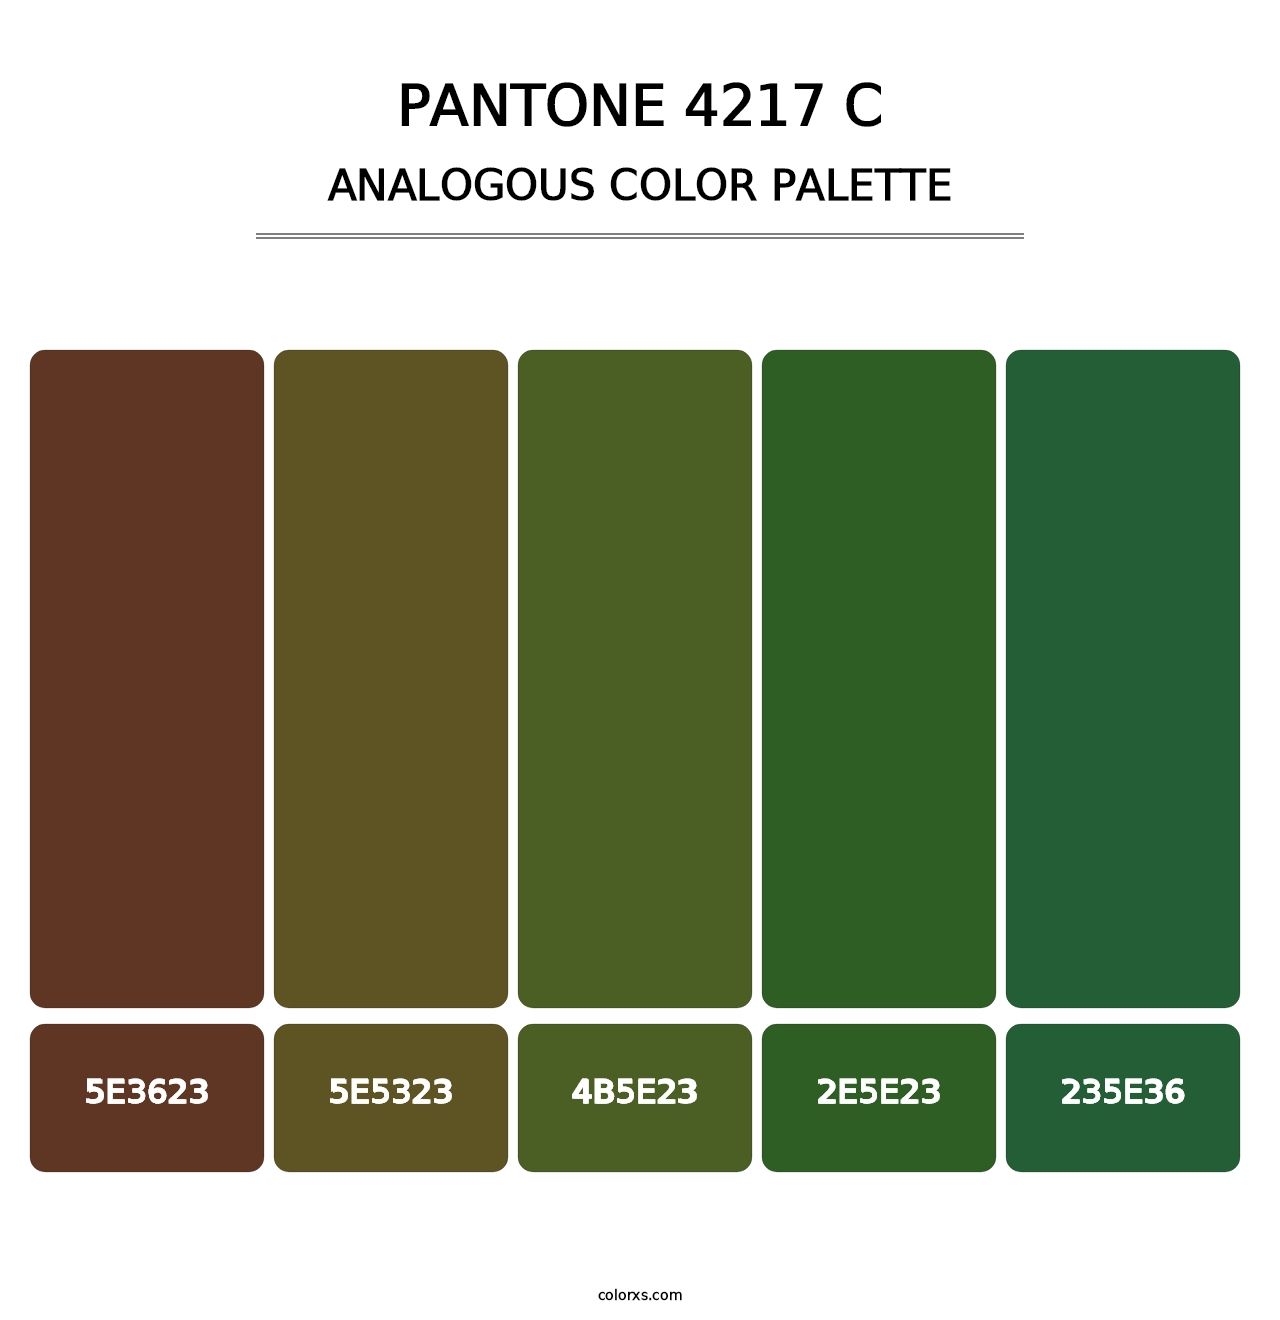 PANTONE 4217 C - Analogous Color Palette